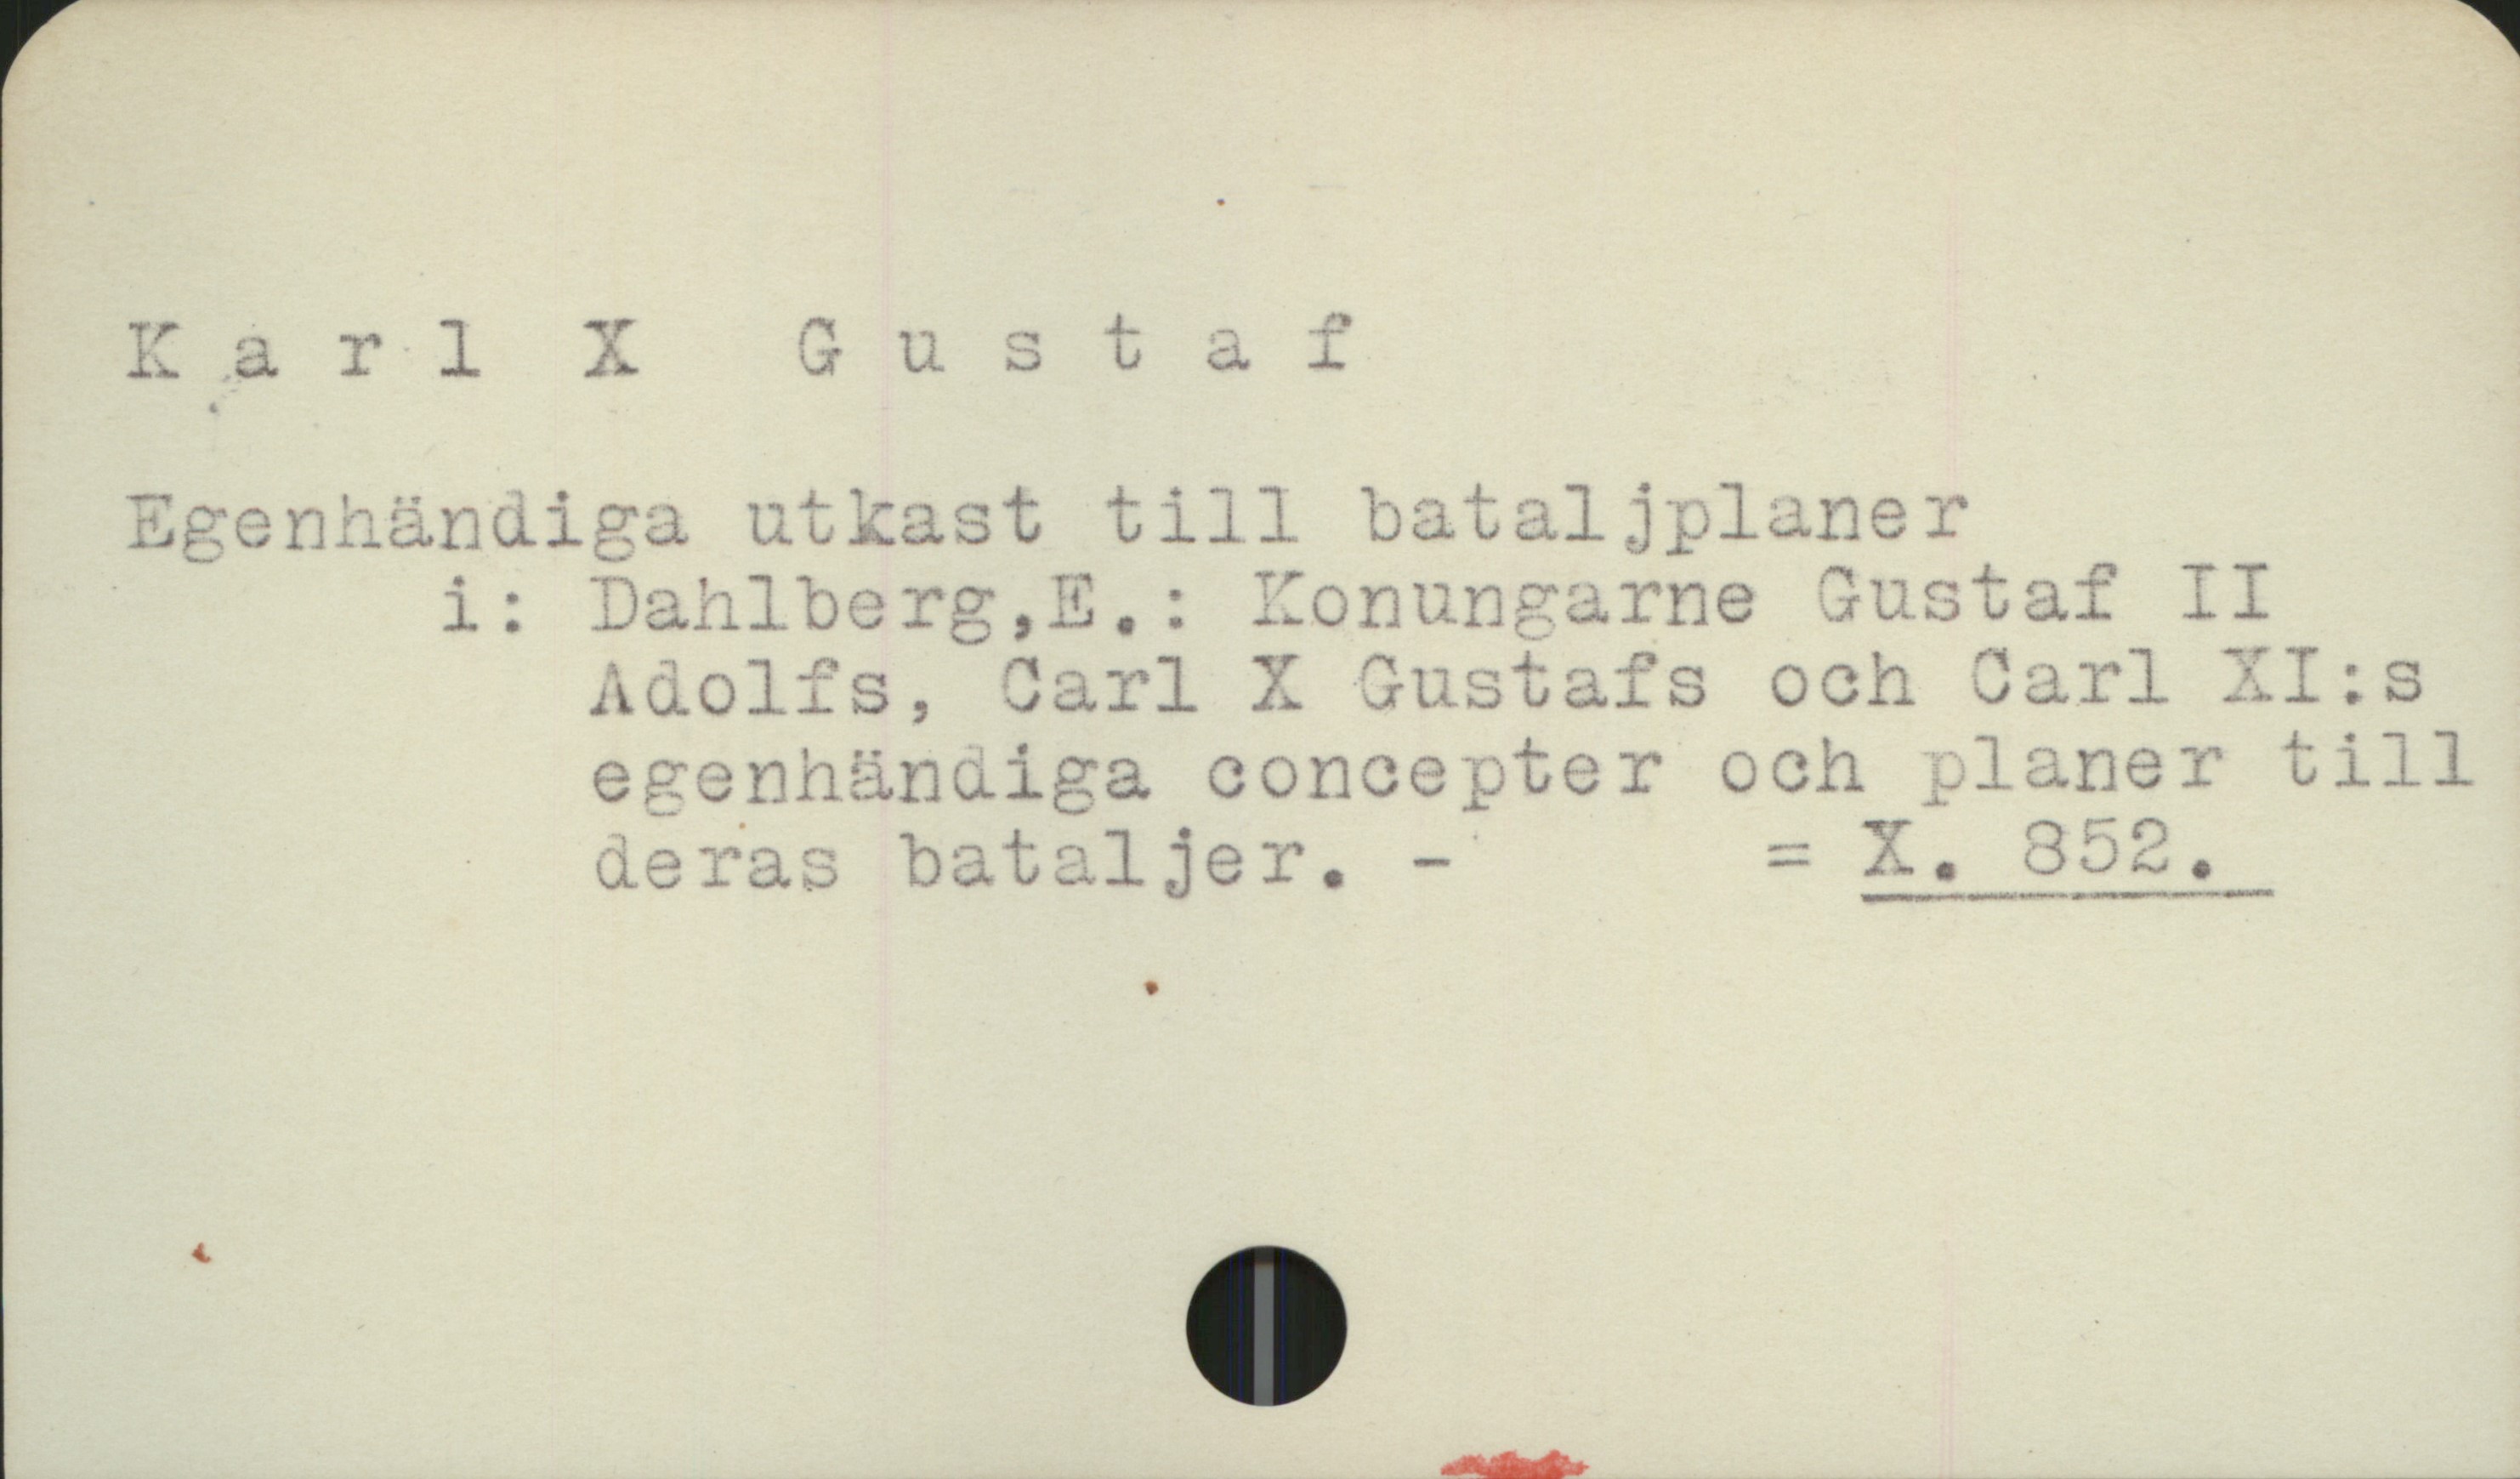  &" - , ärr
5 &
K & 7:11 XAustaf
Egenhändiga utkast till bataljplaner
i i: Dahlberg,E,.: Konungarne Gustaf II
Adolfs, Carl X Gustafs och Carl XI.:s
egenhändiga concepter och planer till
vv P Ae. » i

